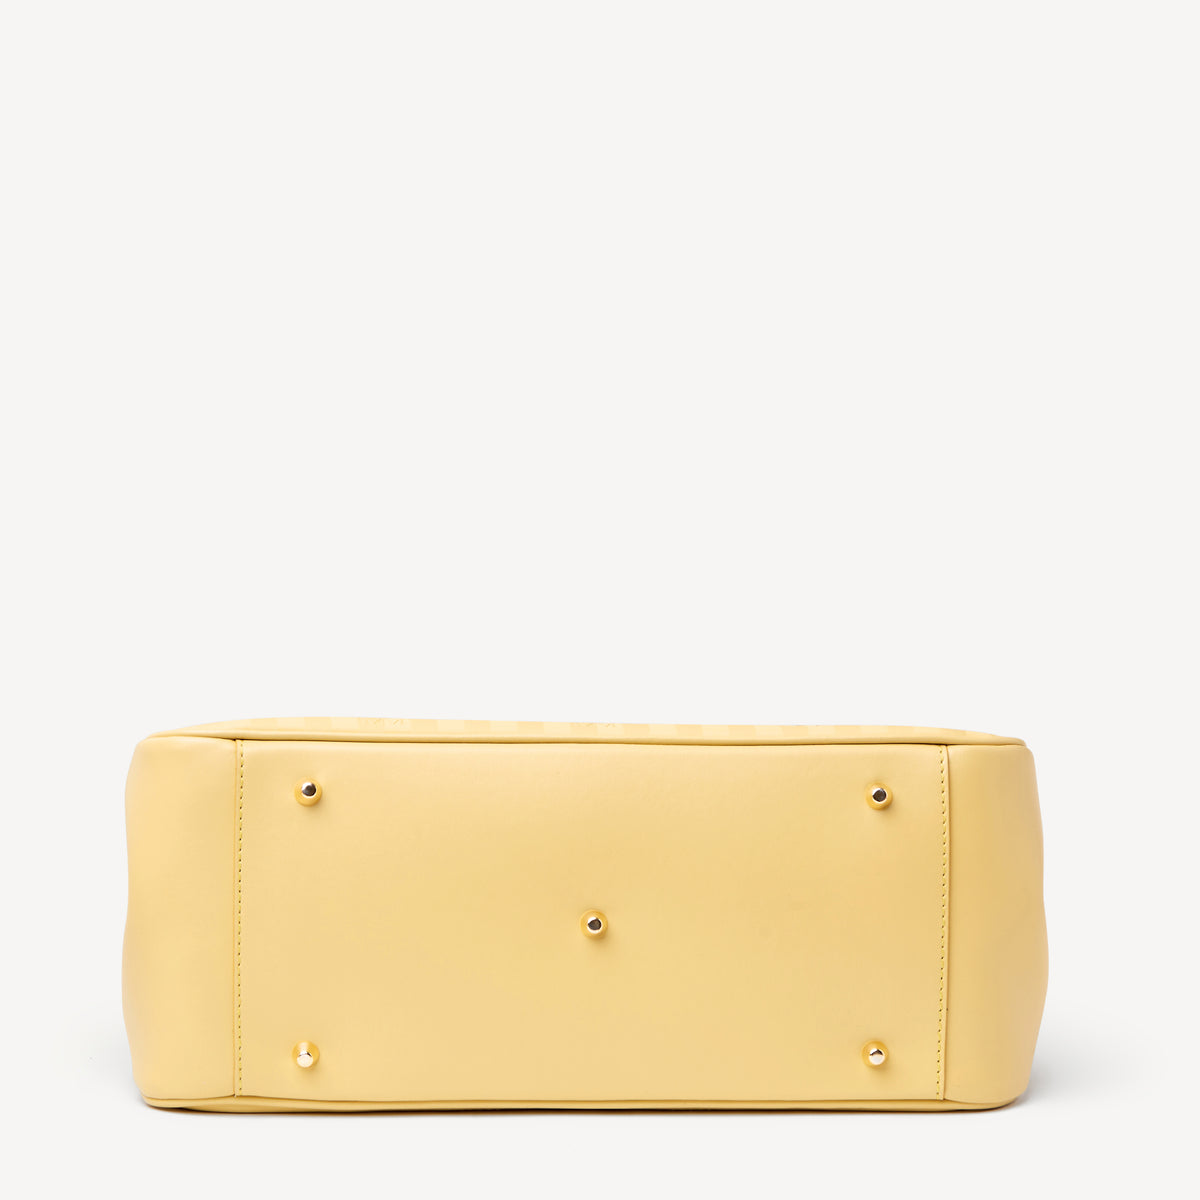 DONAT | Handtasche ginger gelb/gold - von unten